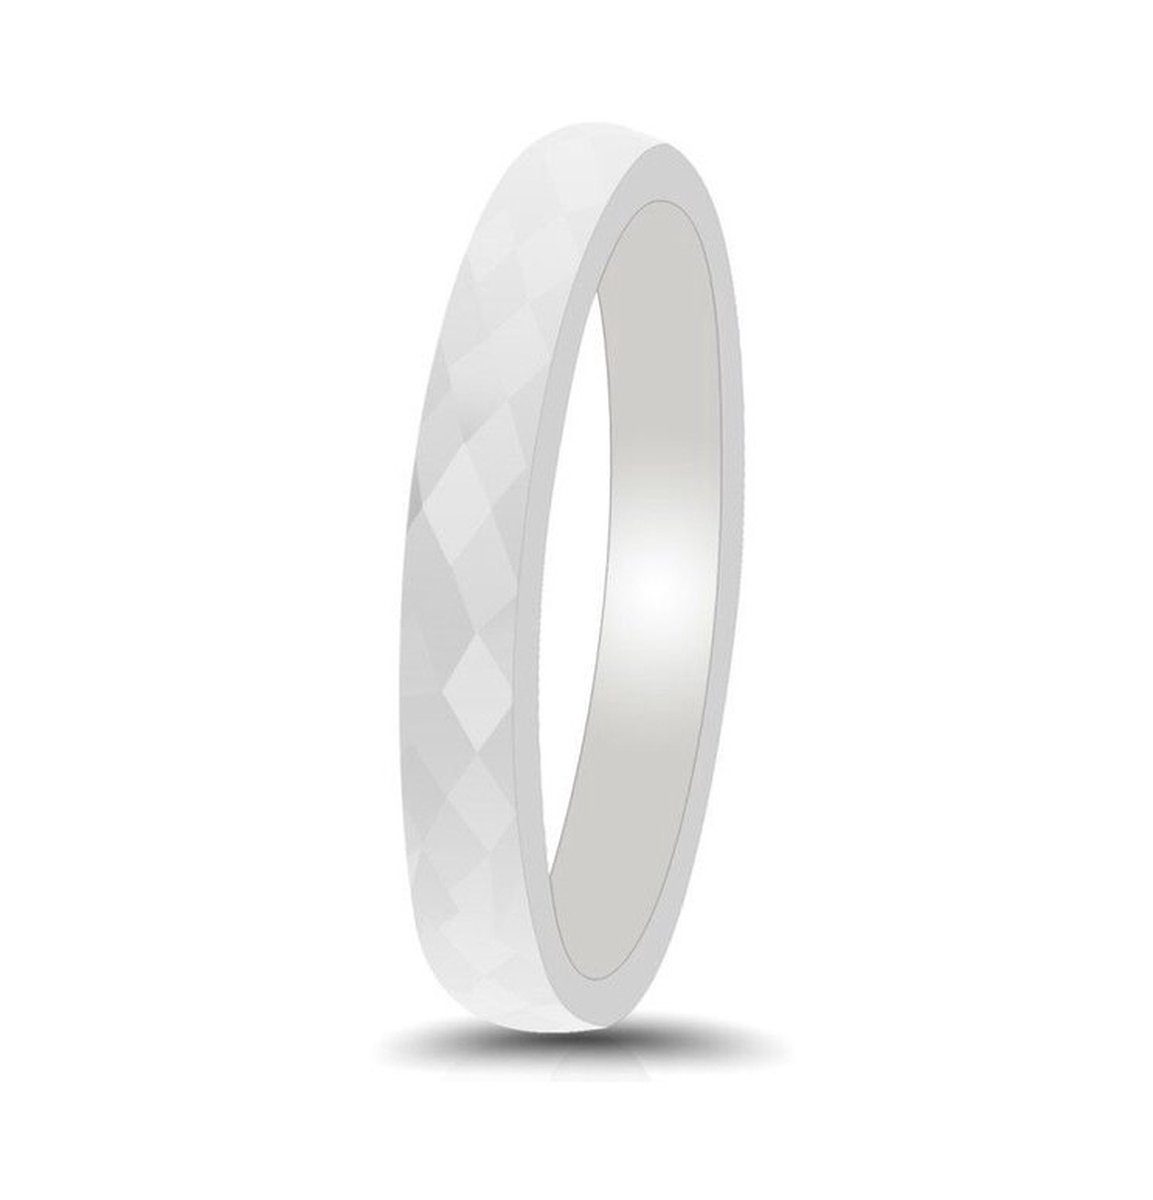 Witte ring keramisch - Hamerslag glanzende structuur Mauro Vinci Unisex ringen - met geschenkverpakking - maat 9